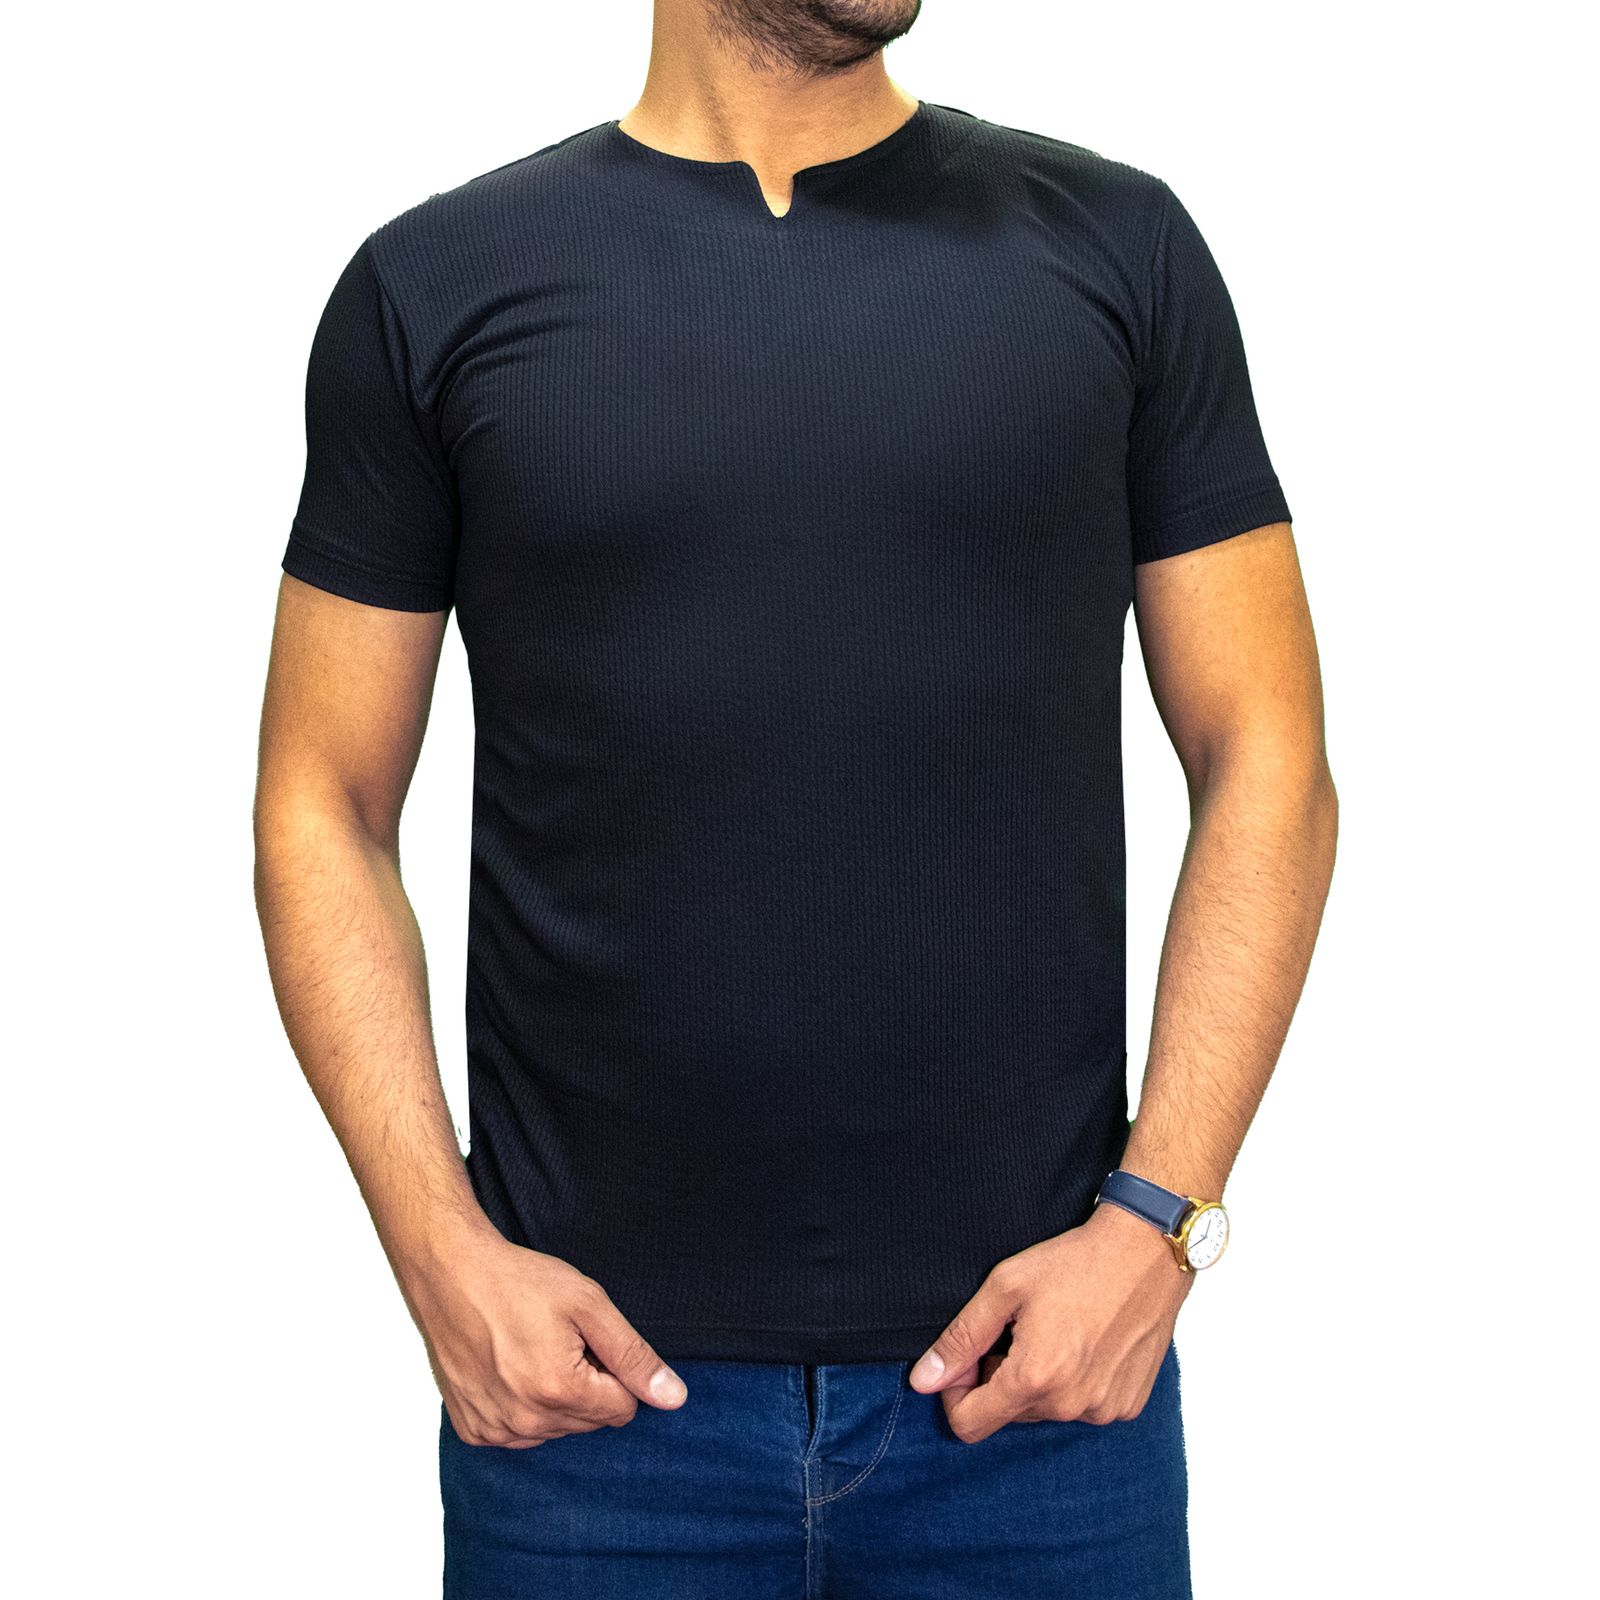 تی شرت آستین کوتاه مردانه کاملیا مدل کوبایی کد 51677 رنگ مشکی -  - 1